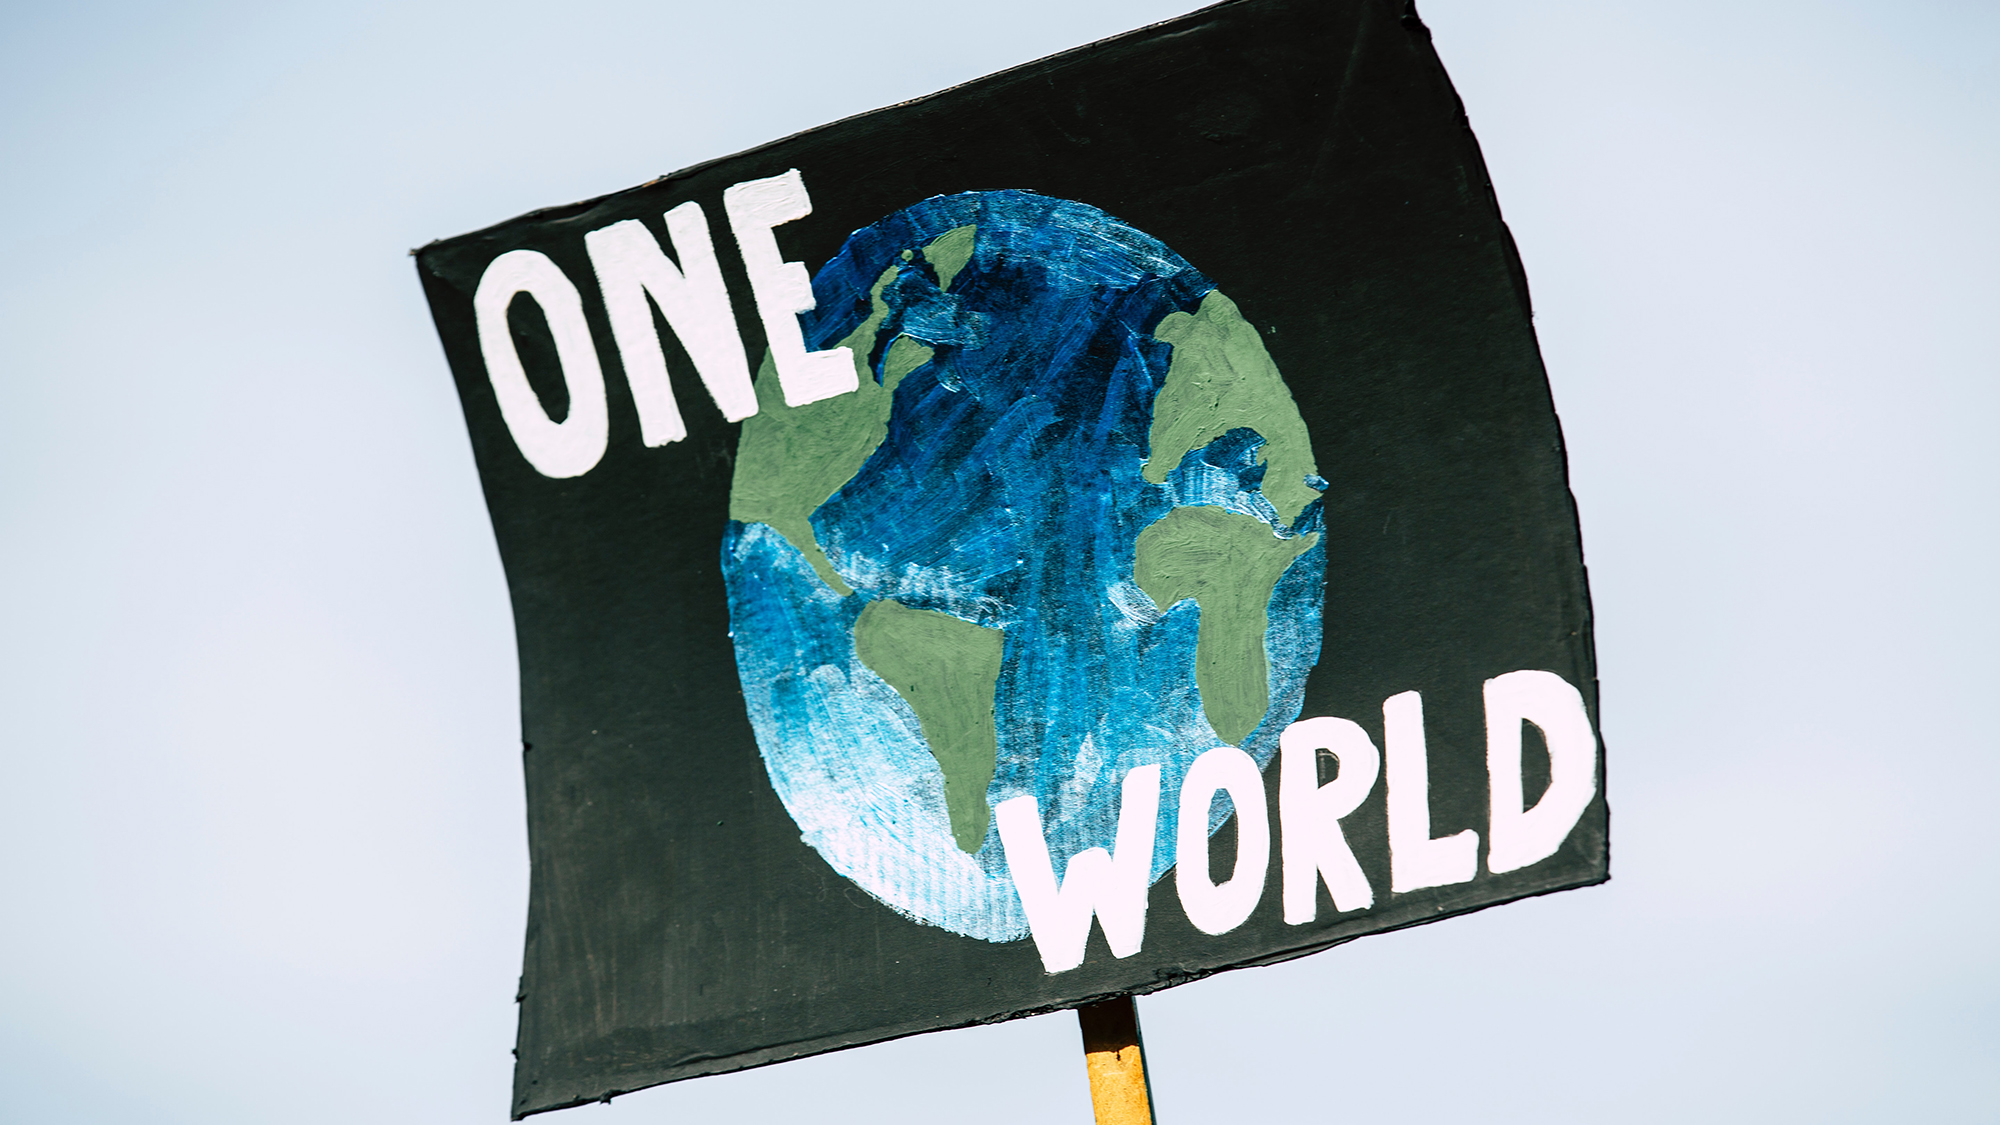 cartel pintado a mano donde se ve un globo terráqueo sobre fondo negro y unas letras blancas que dicen 'one world'.